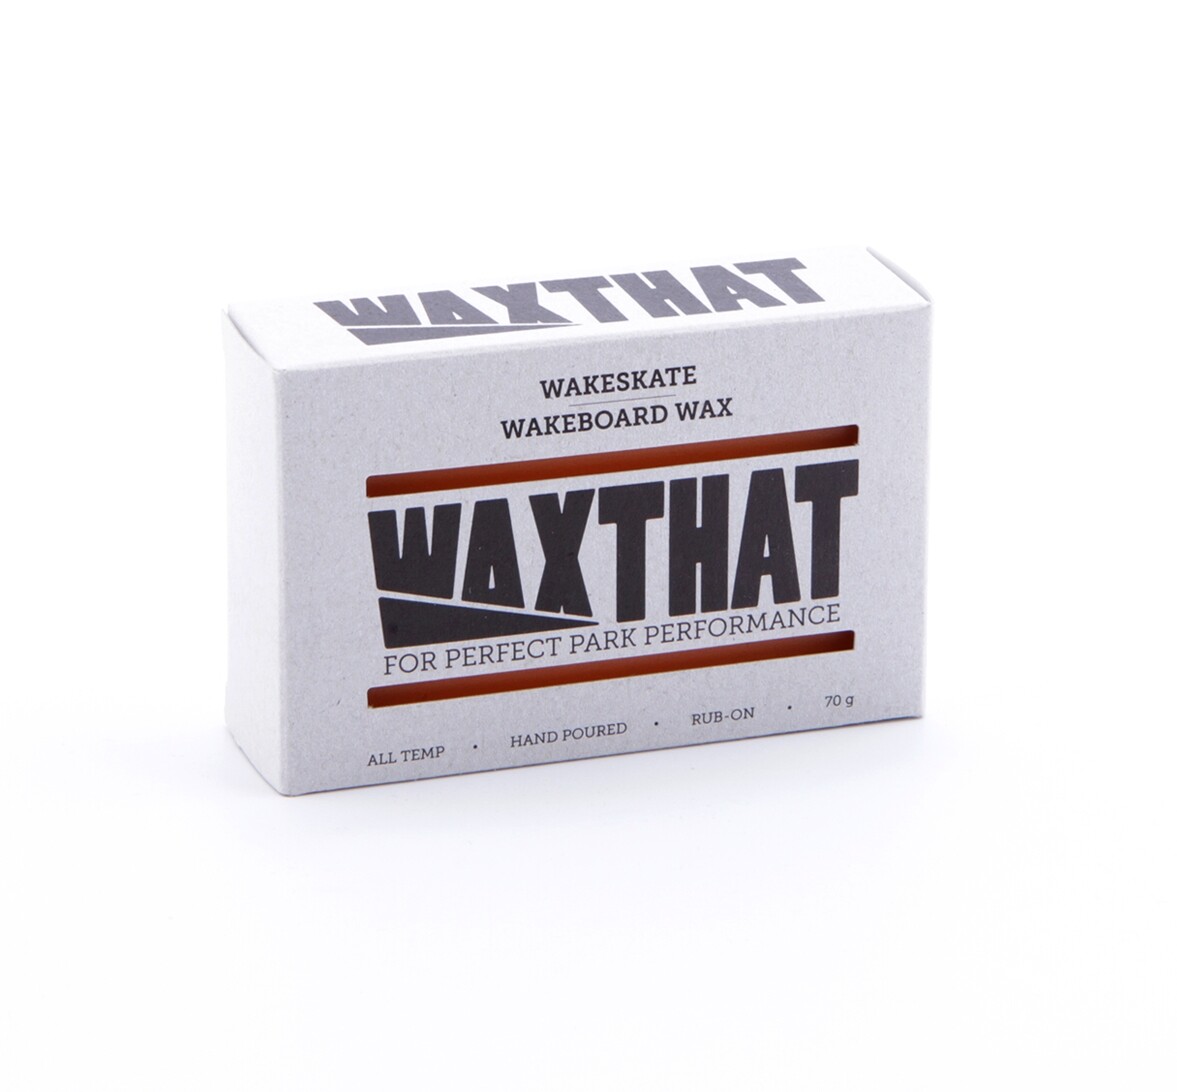 Wax that Wakeboard Wax